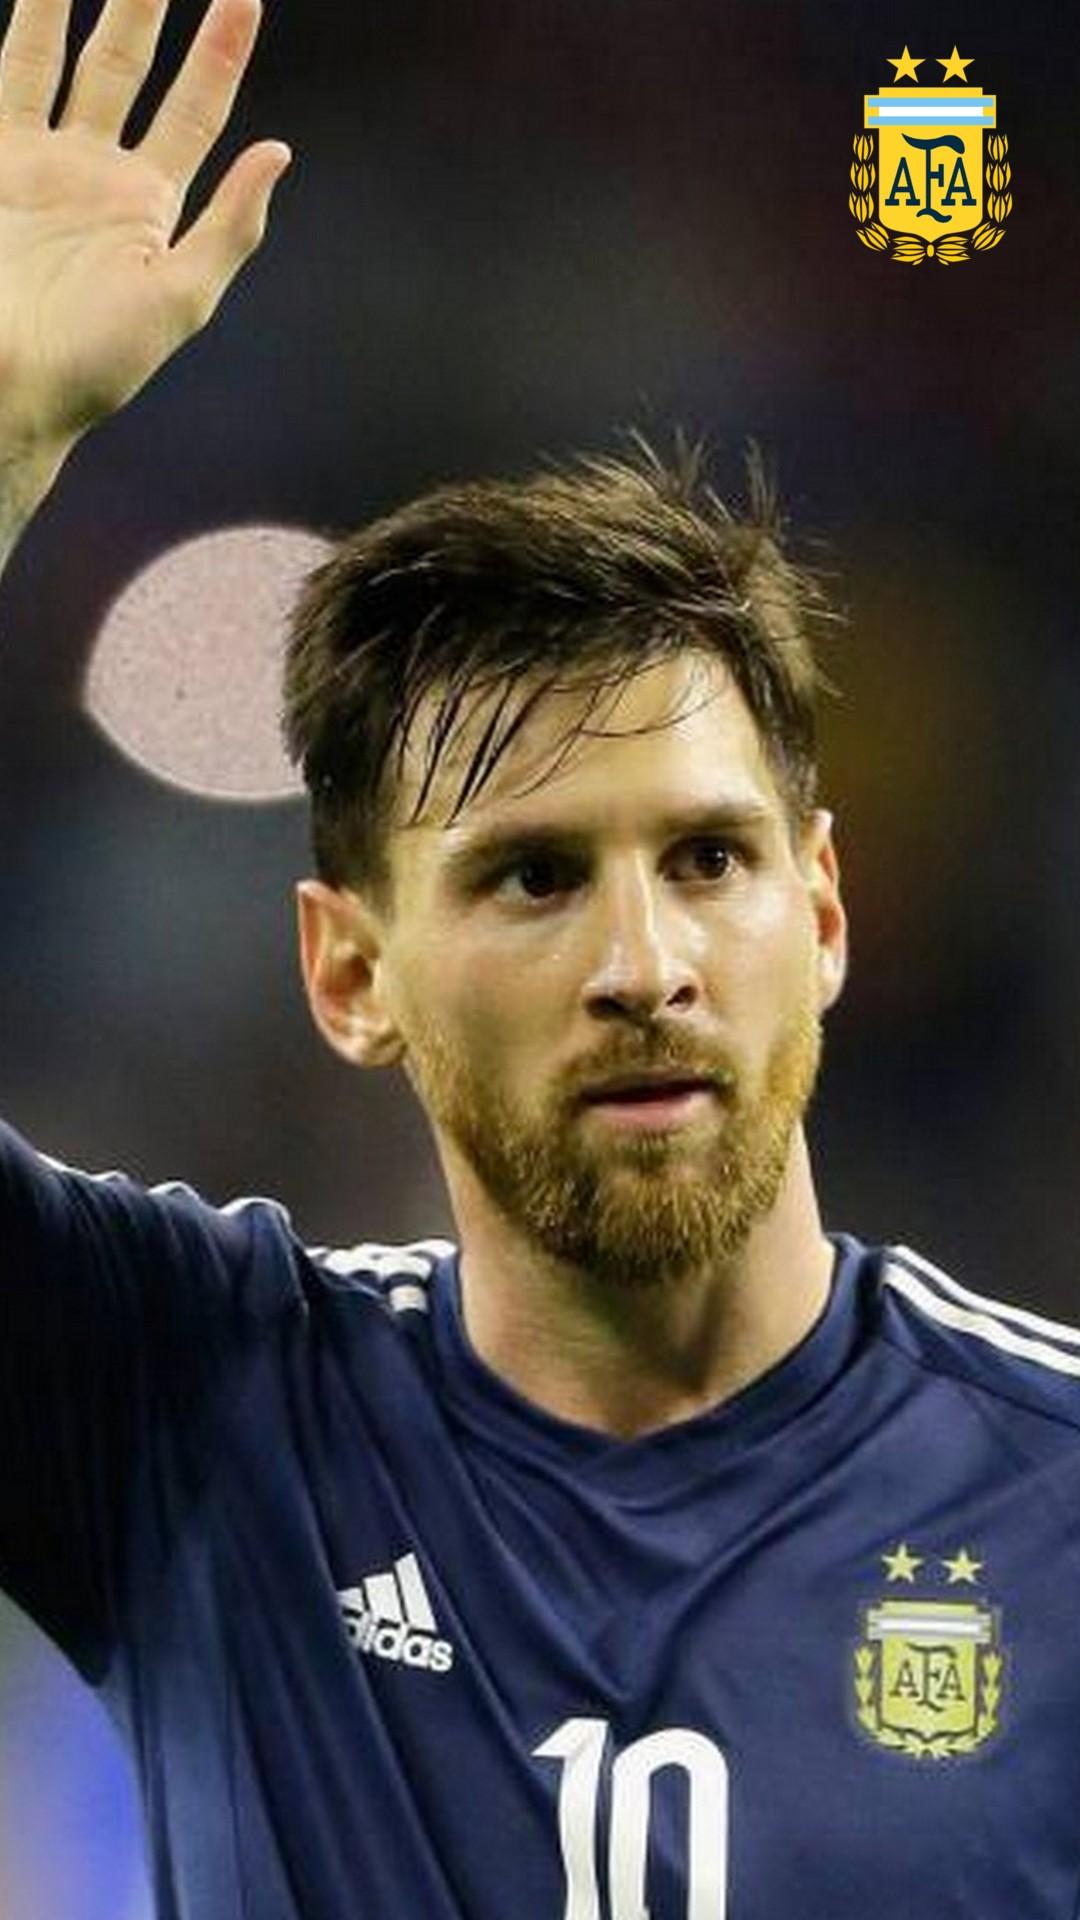 Messi wallpapers: Tổng hợp những hình nền độc đáo và ấn tượng của Lionel Messi để chào đón mỗi ngày theo cách của bạn. Những bức tranh nền này không chỉ đơn thuần là một tác phẩm nghệ thuật mà còn là sự ngưỡng mộ sự nghiệp của siêu sao này.